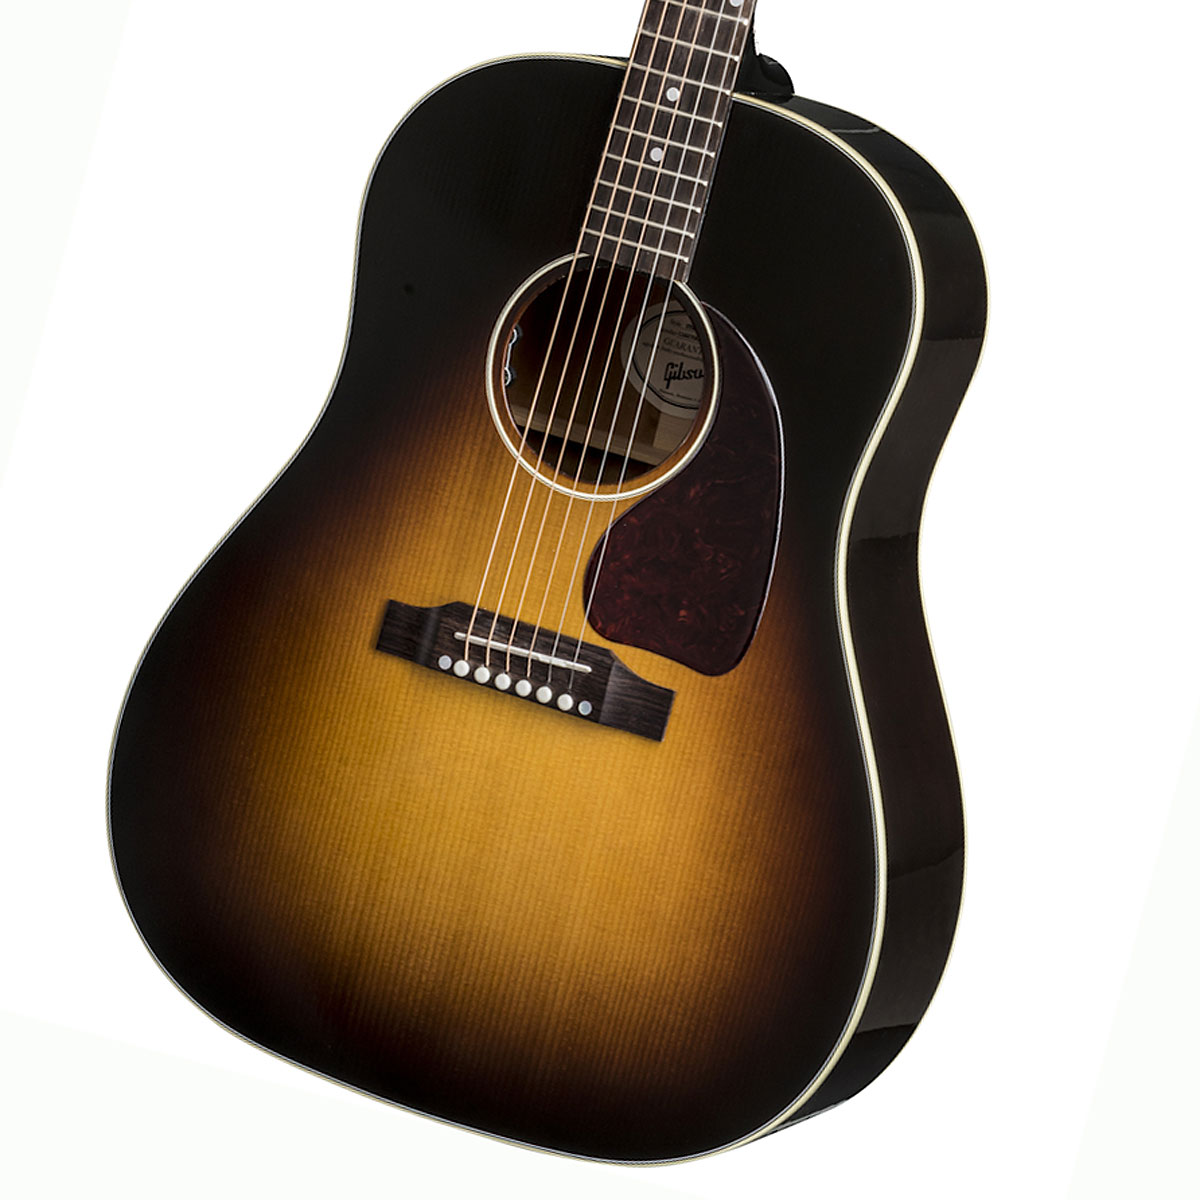 Gibson / J-45 Standard VS Vintage Sunburst ギブソン アコースティックギター フォークギター アコギ J45【渋谷店】【YRK】